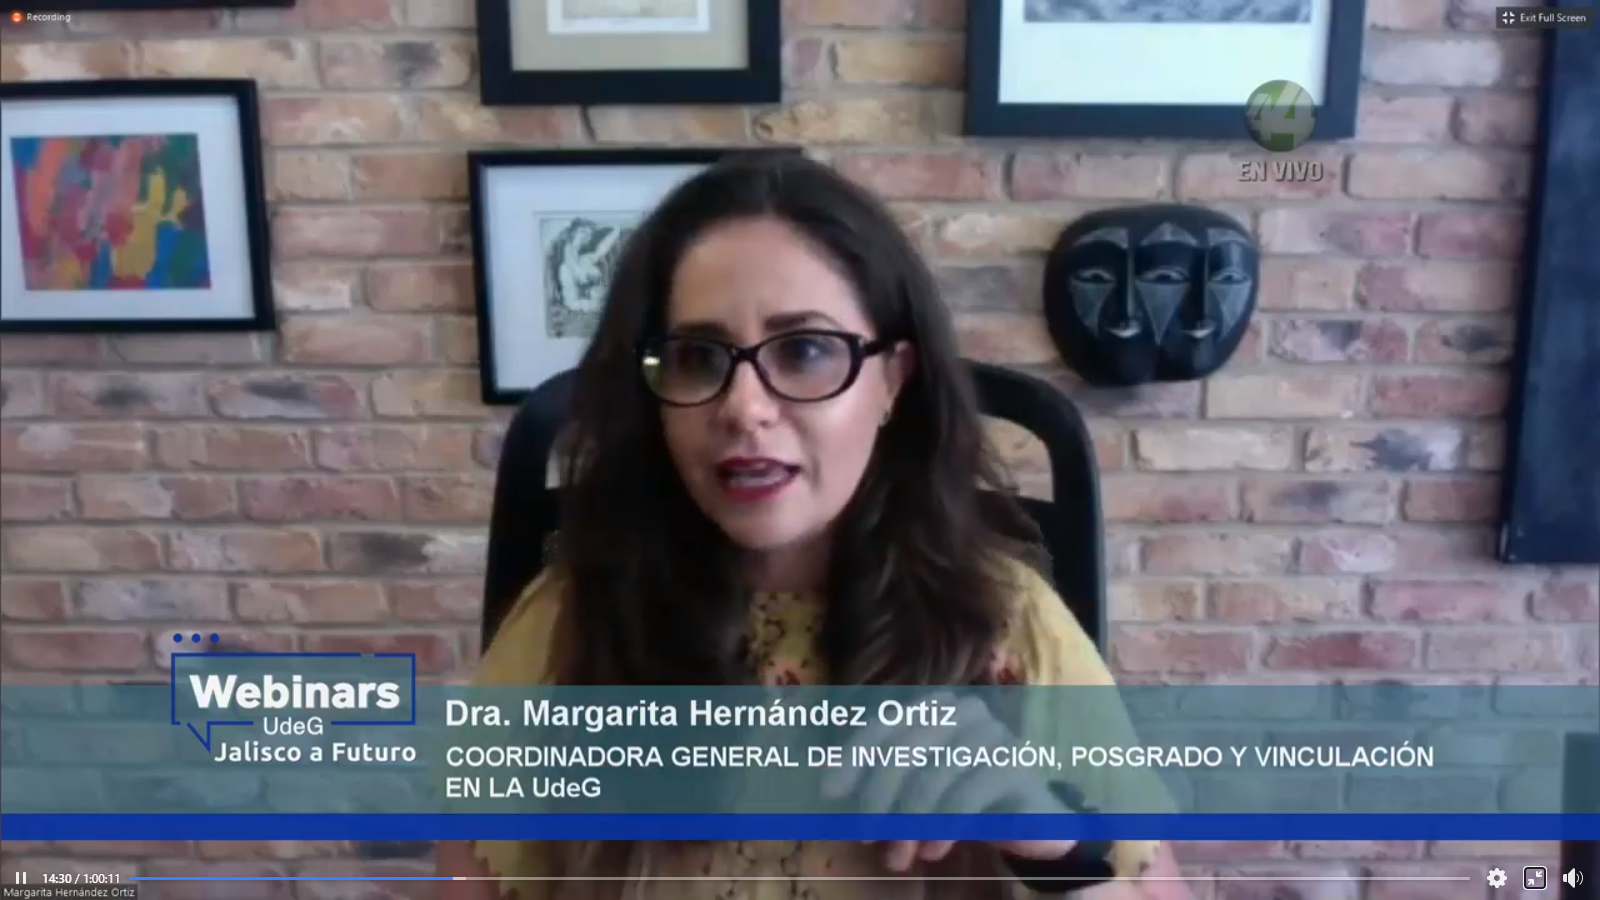 La Coordinadora General de Investigación, Posgrado y Vinculación de la UdeG, doctora Margarita Hernández Ortiz